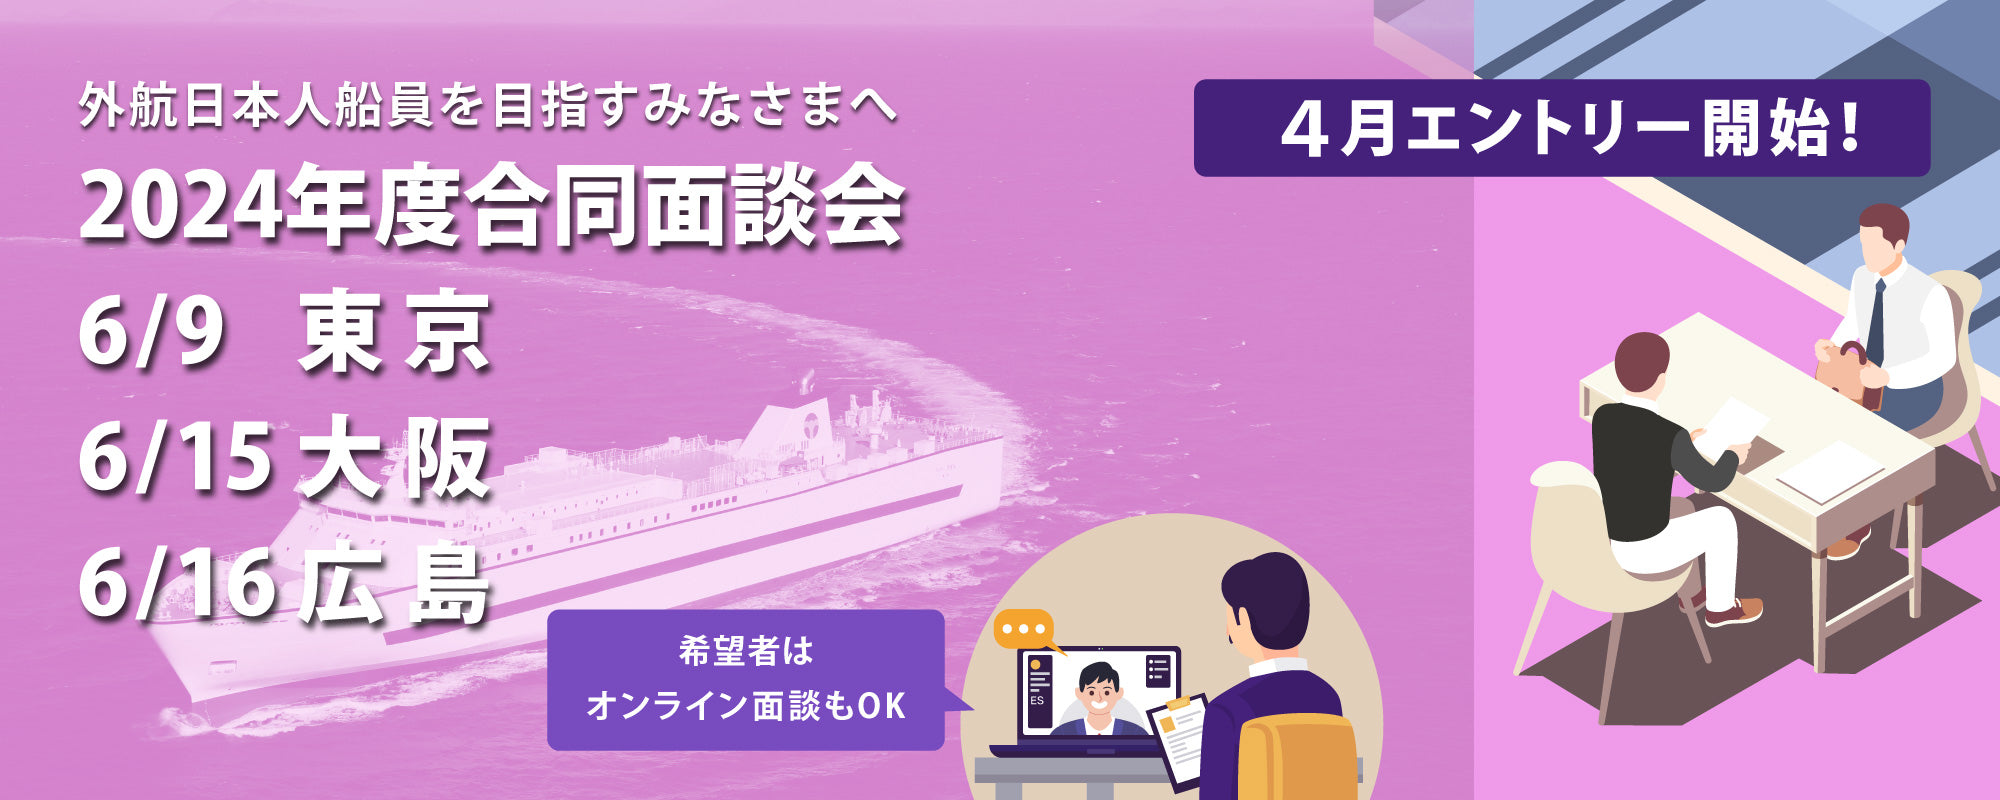 公益財団法人 日本船員雇用促進センター – SECOJ